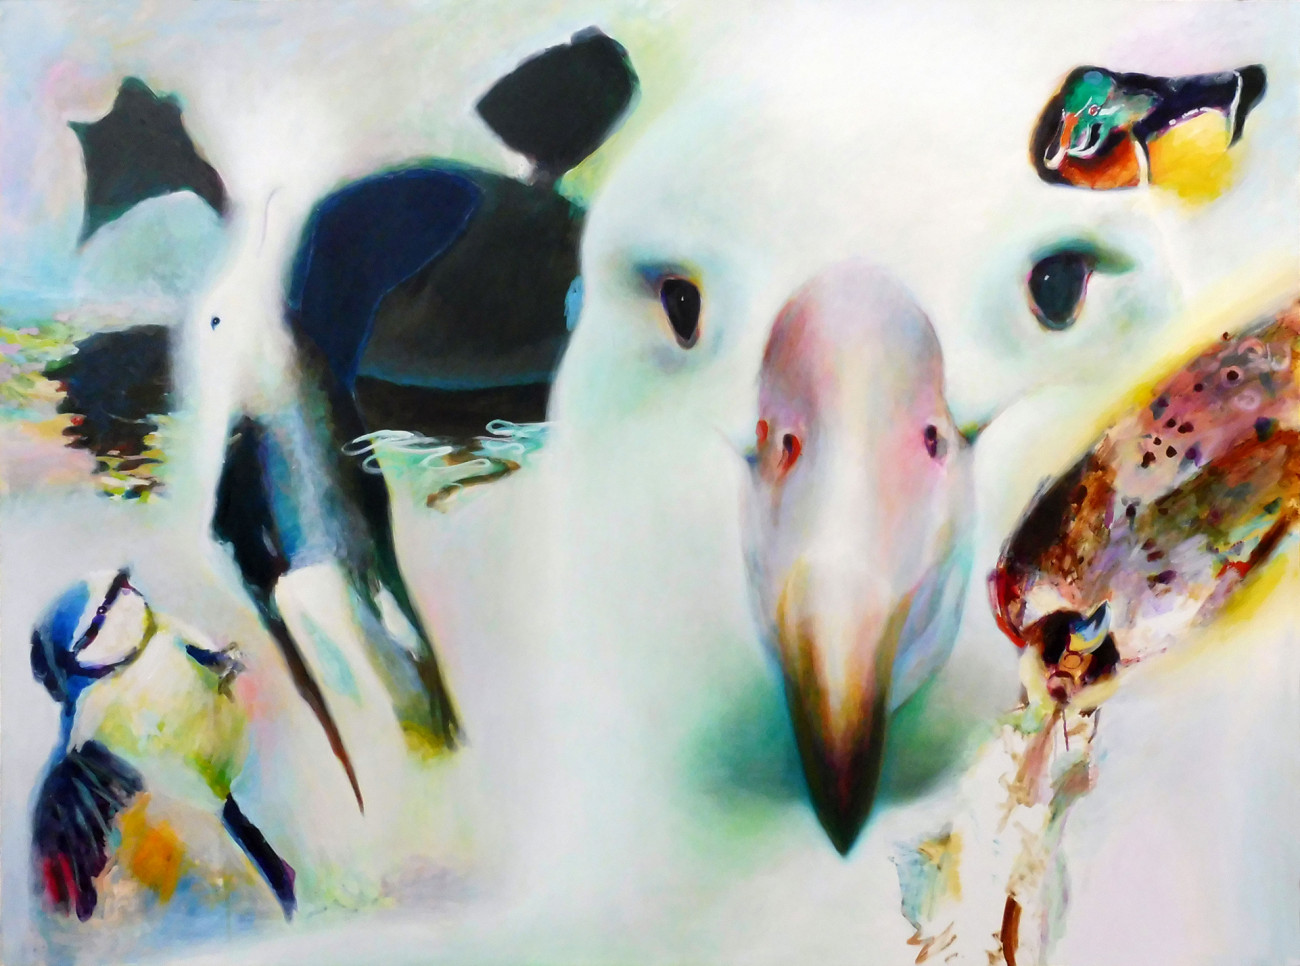 Christian Uhl  &#8211;  uhl-kunst, Vogelbild 5 &#8211; Albatrosse, Enten, Meise, Falke uhl-kunst